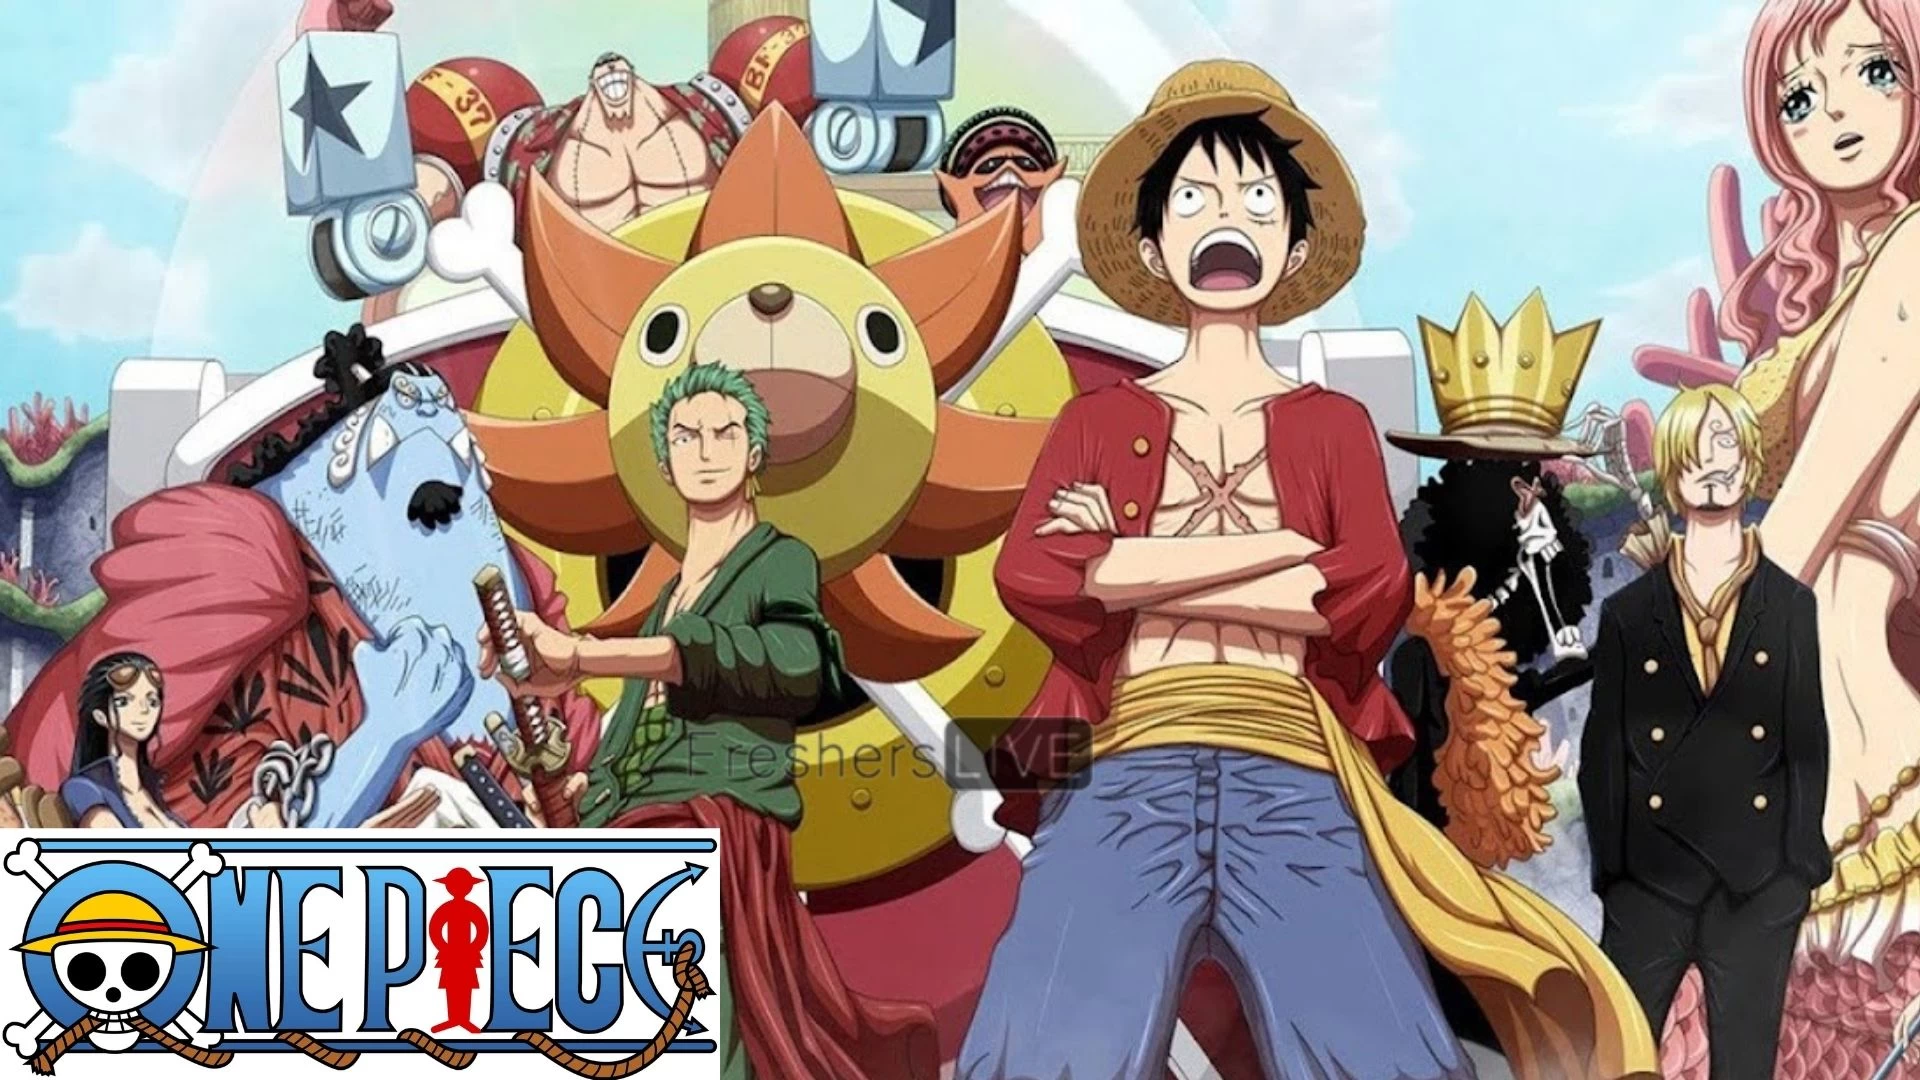 Spoilers del capítulo 1095 de One Piece, fecha de lanzamiento y más